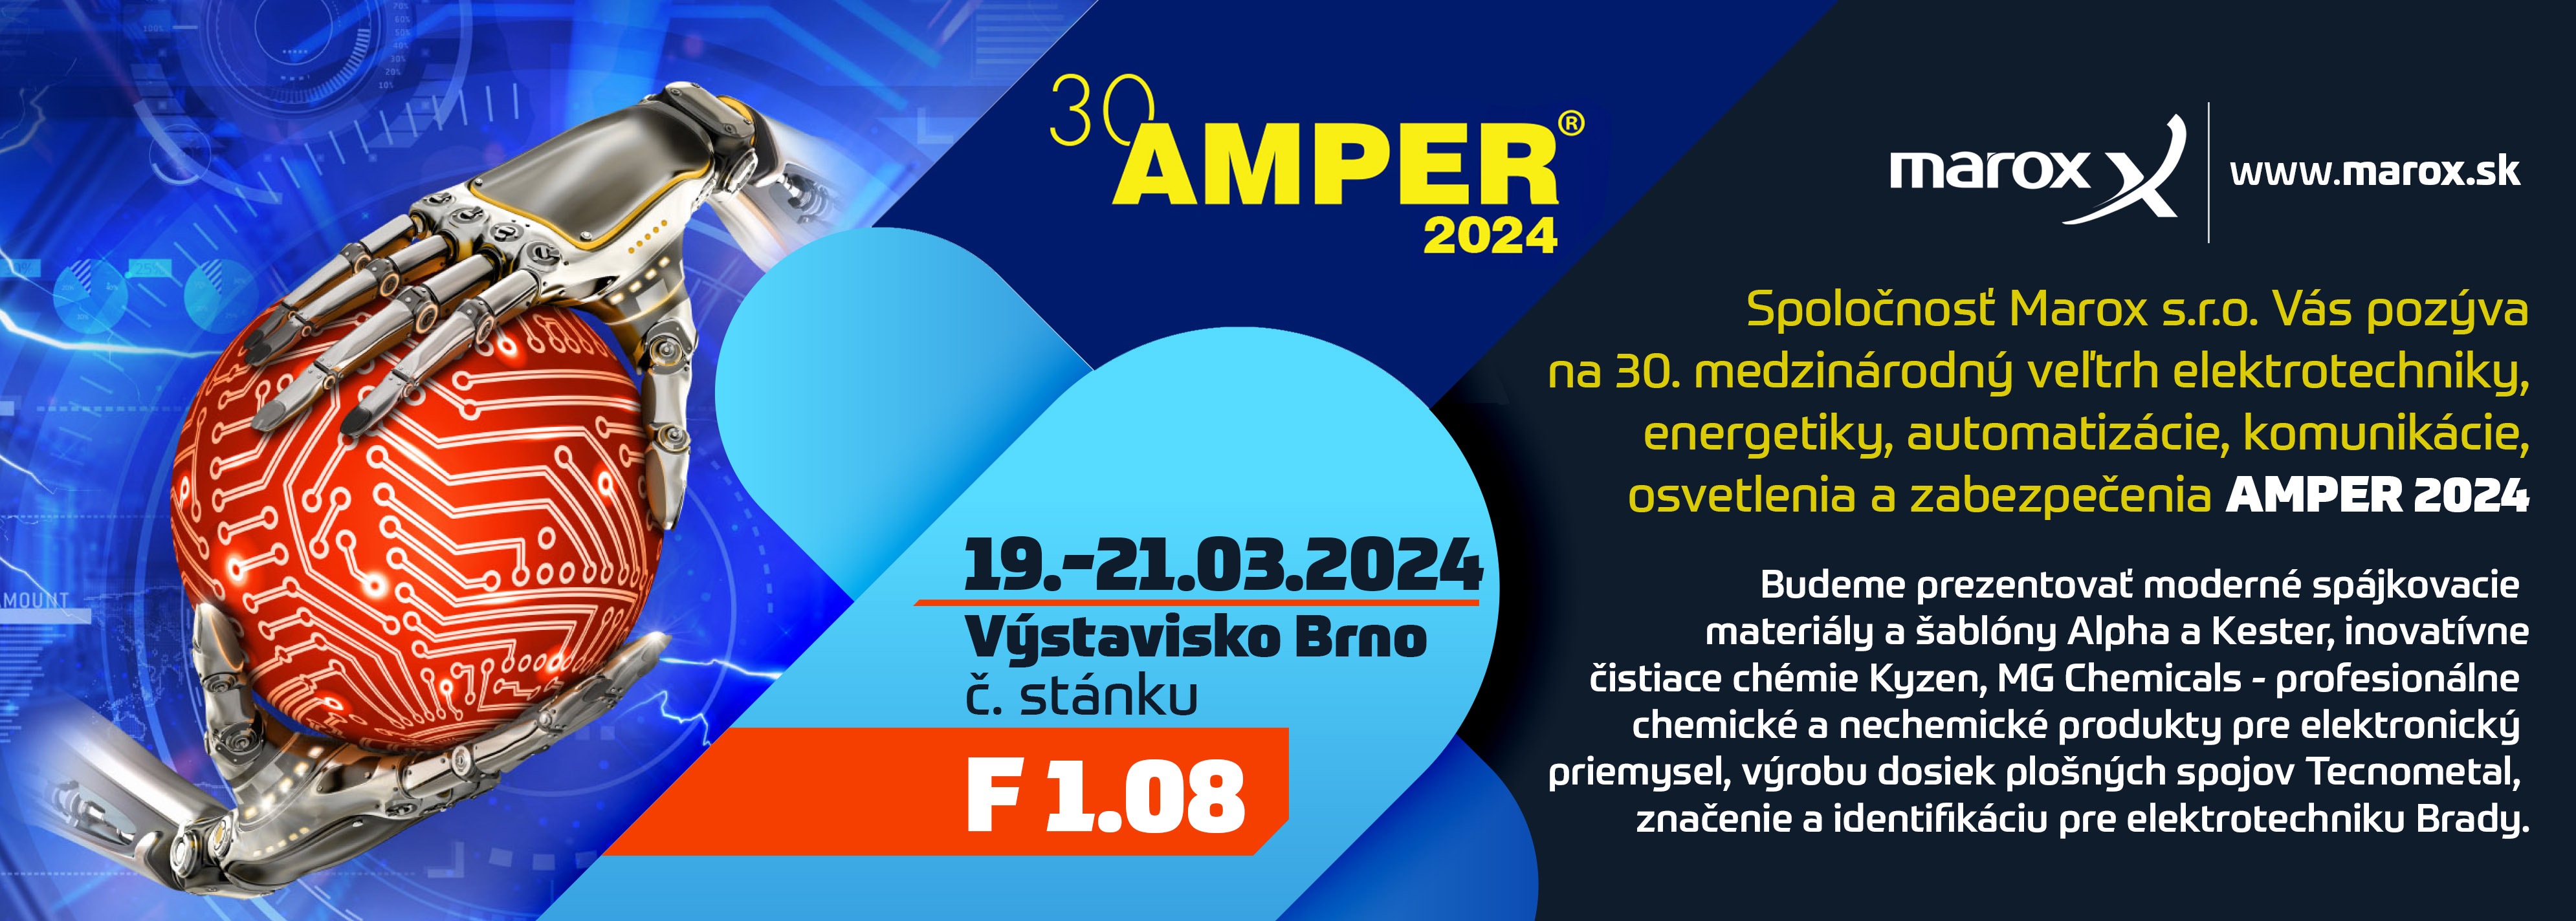 amper 2024 pozvanka sk